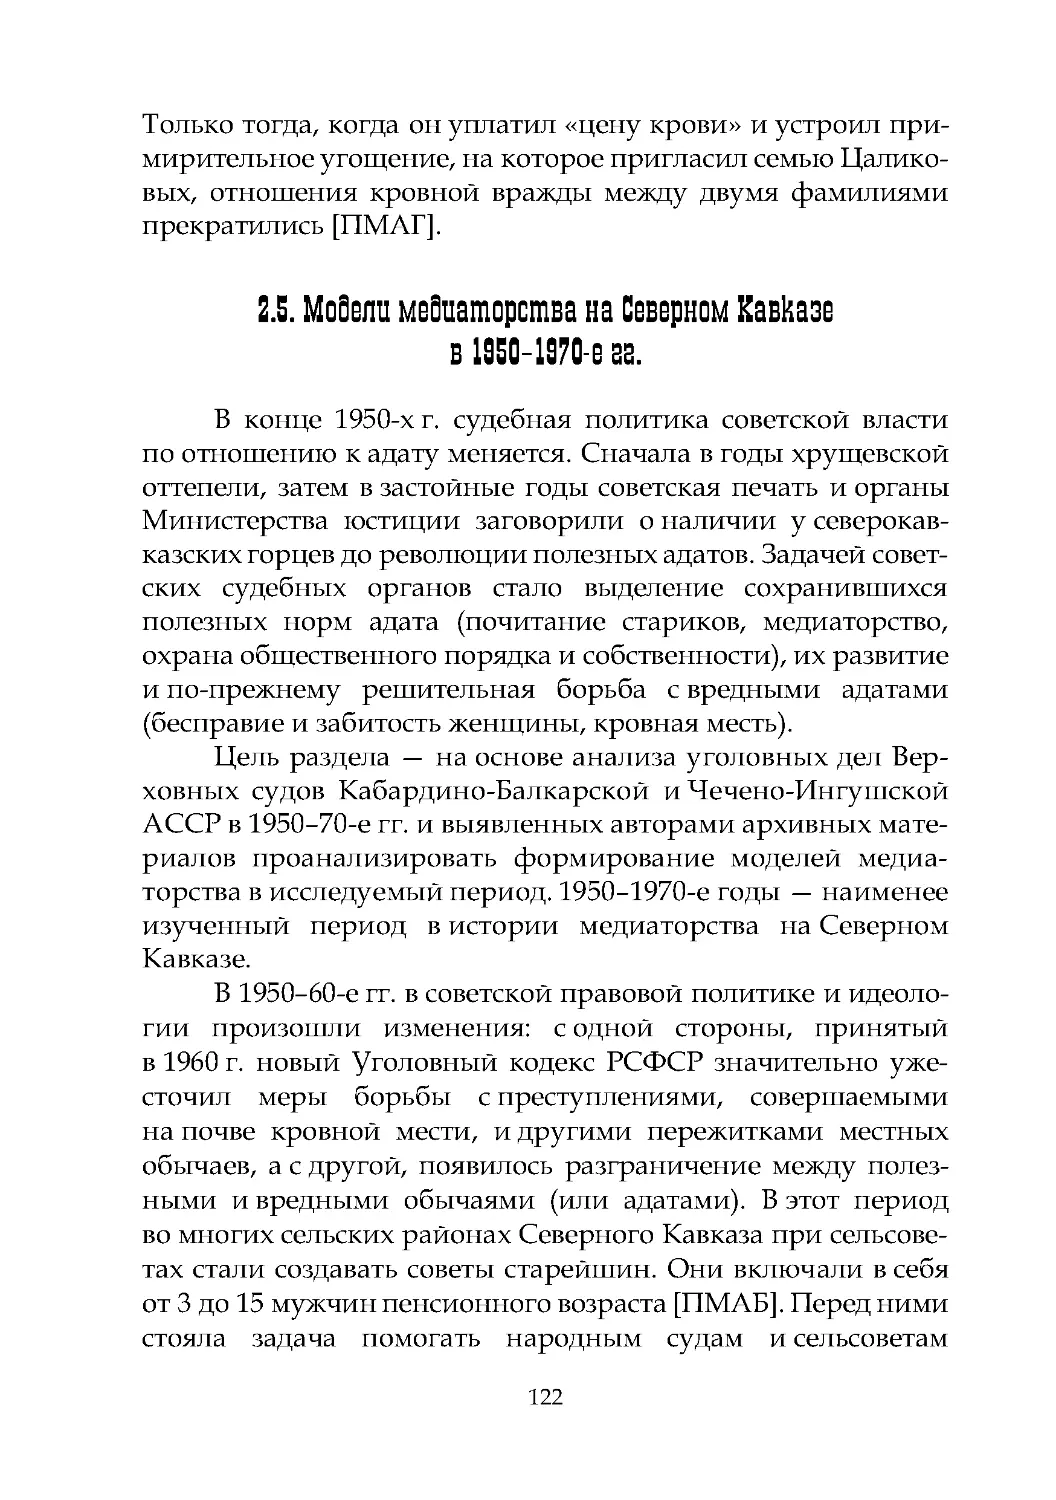 2.5. Модели медиаторства на Северном Кавказе в 1950–1970-е гг.